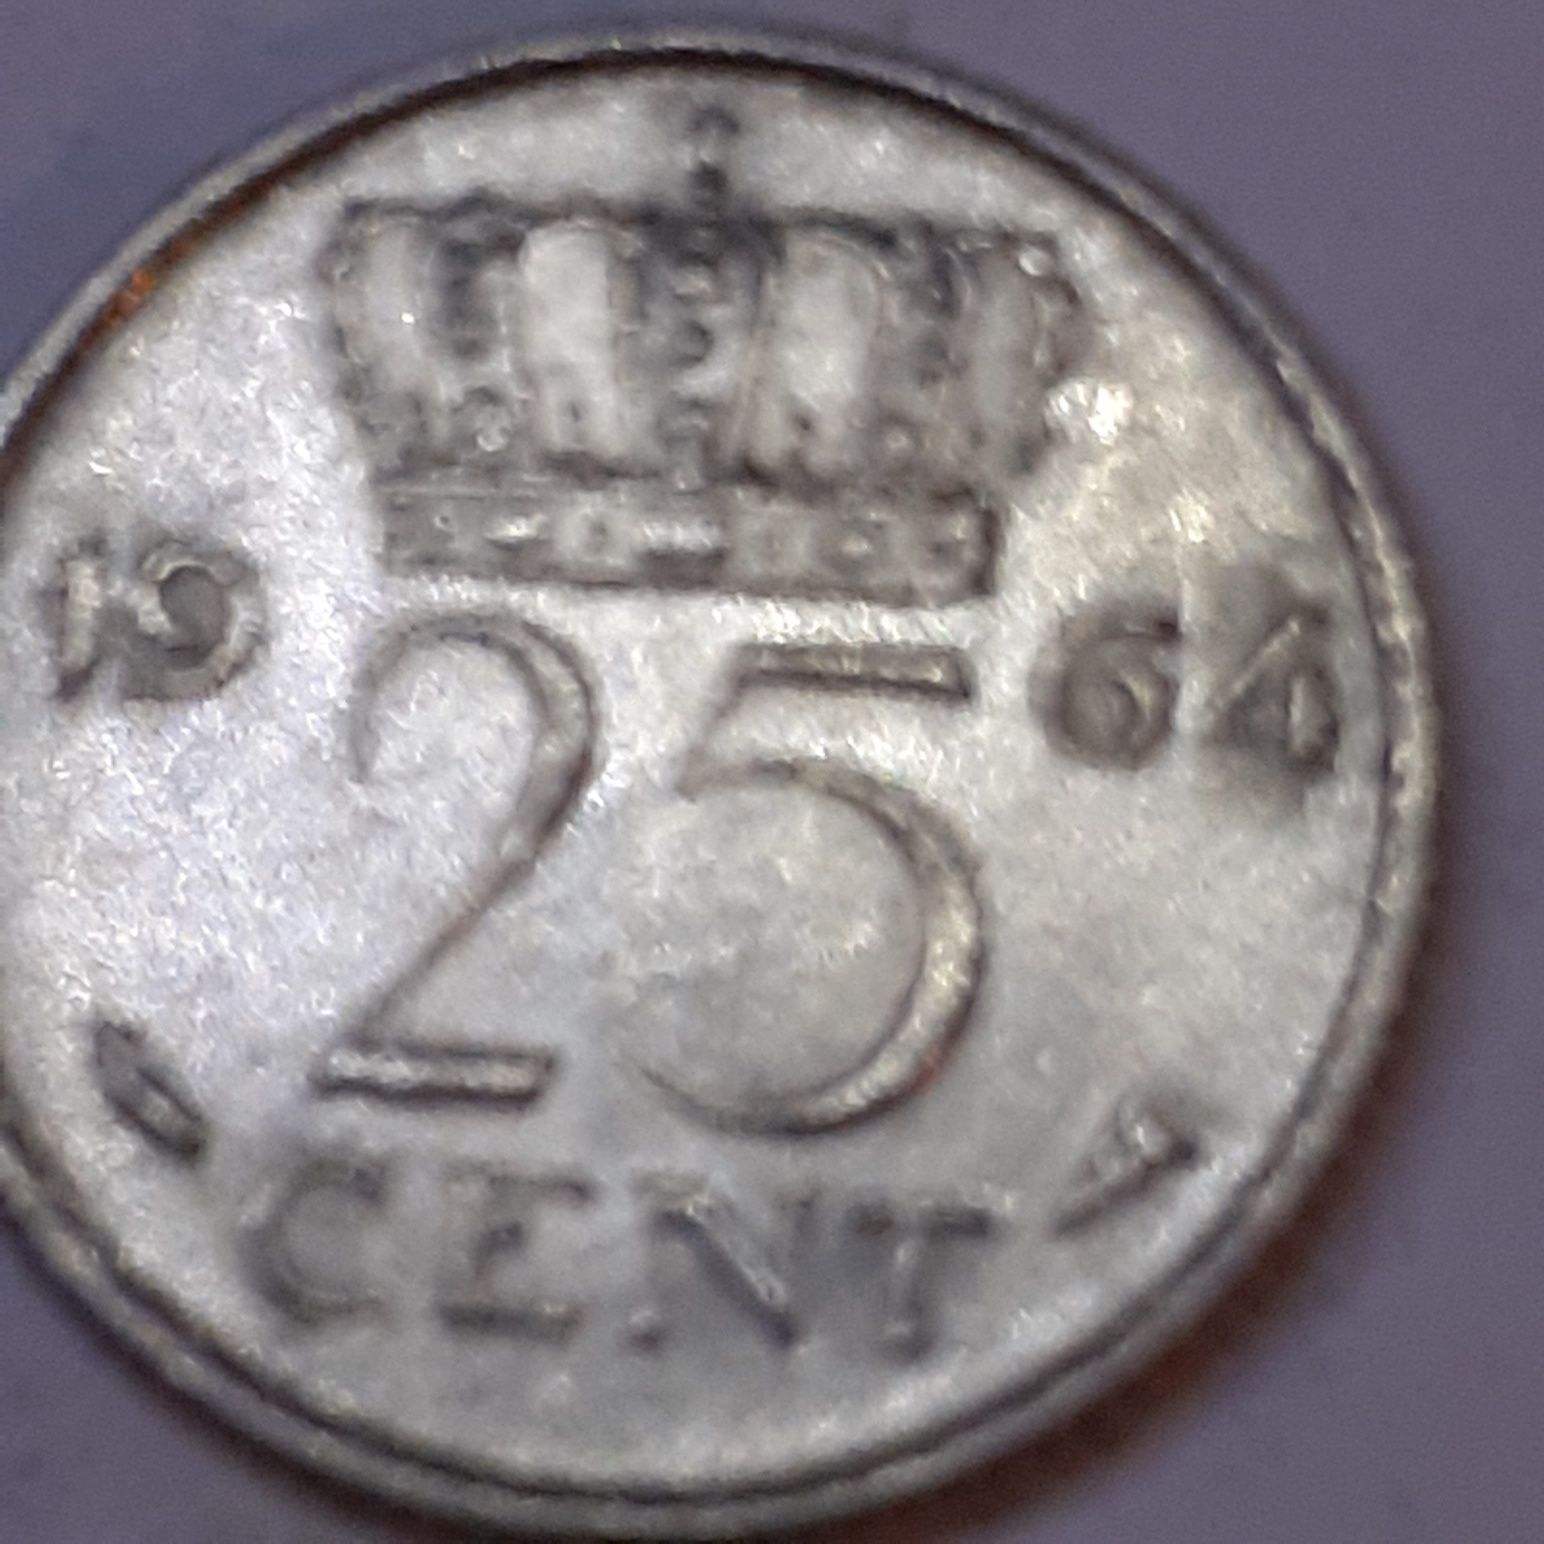 Sprzedam    monetę   z   1964roku 25 Cent   Tylko  teraz sprzedam 300.